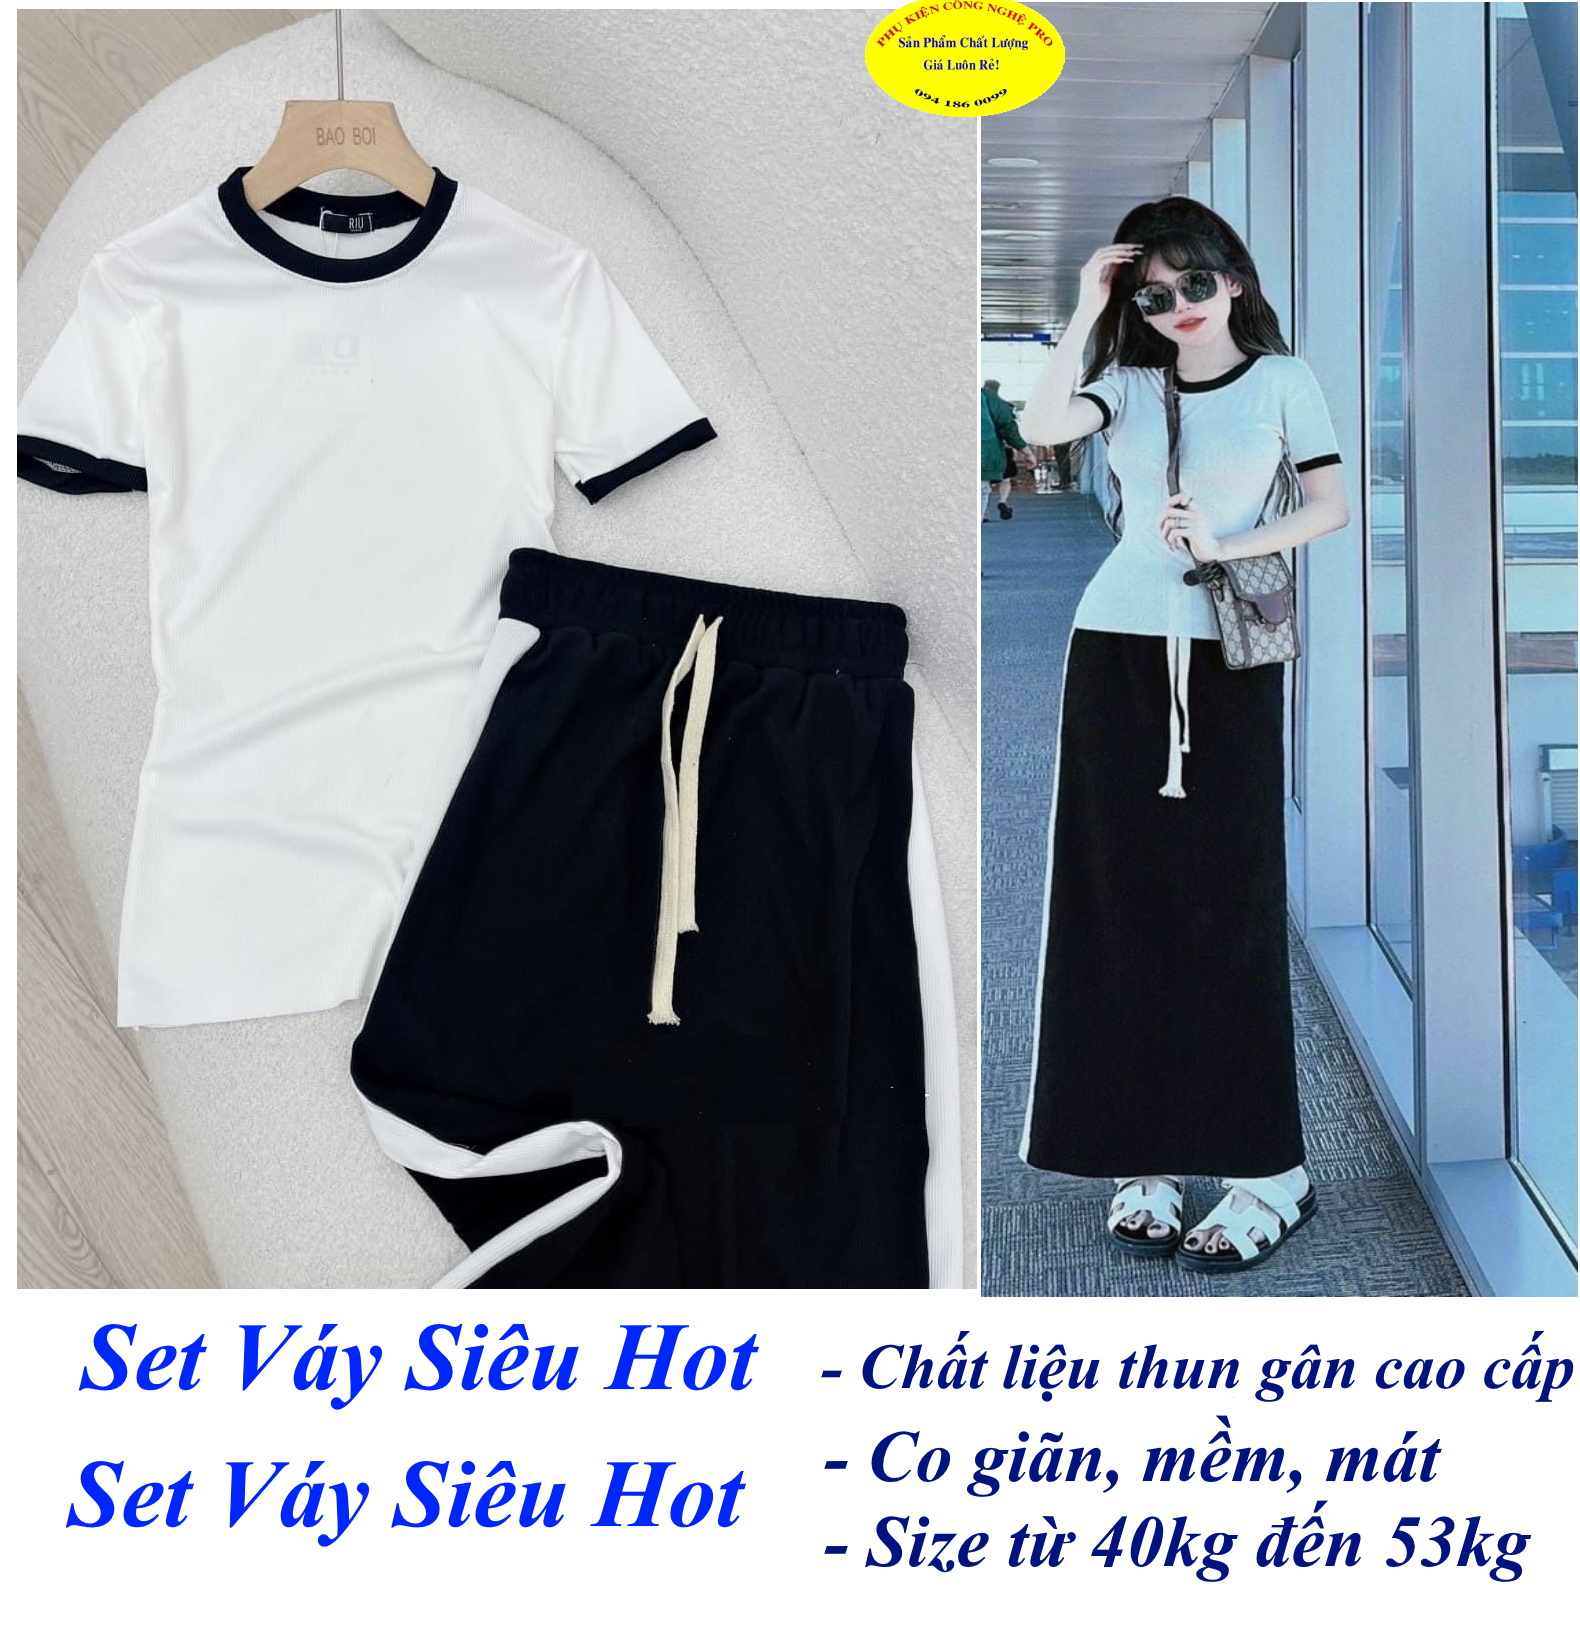 Set bộ đồ nữ Áo trắng kèm Đầm đen sọc trắng siêu hot Size từ 40kg đến 53kg Chất liệu thun gân cao cấp, Co giãn, Mềm mại